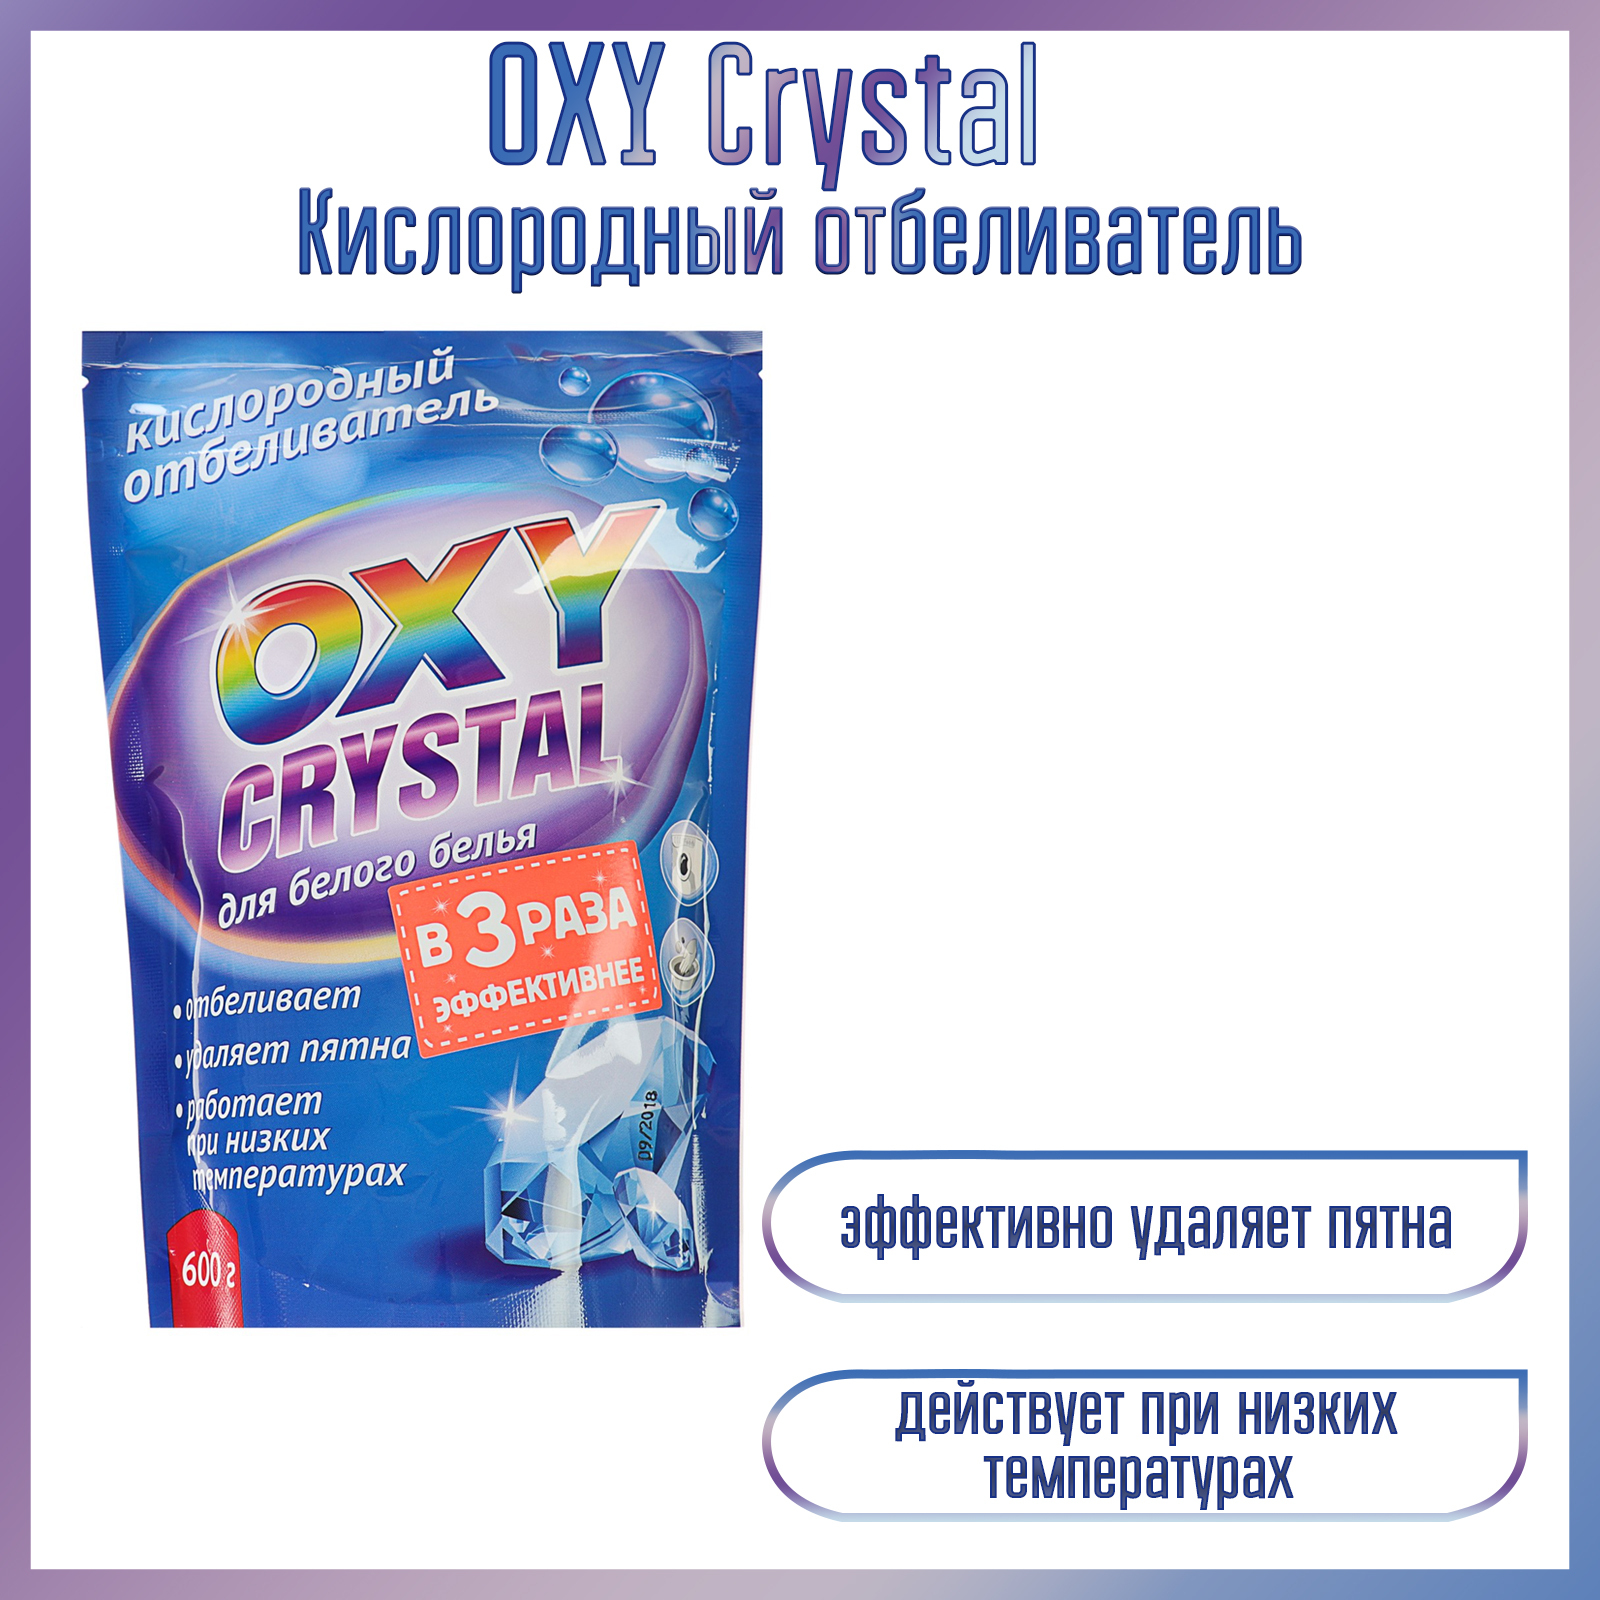 Oxy crystal. Кислородный отбеливатель oxy Crystal для белого белья 600 г. Кислородный отбеливатель oxy Crystal 600г. Отбеливатель кислородный selena oxy Crystal для белого белья 600гр. Отбеливатель oxy Crystal 600г кислородный д/цветного пакет.